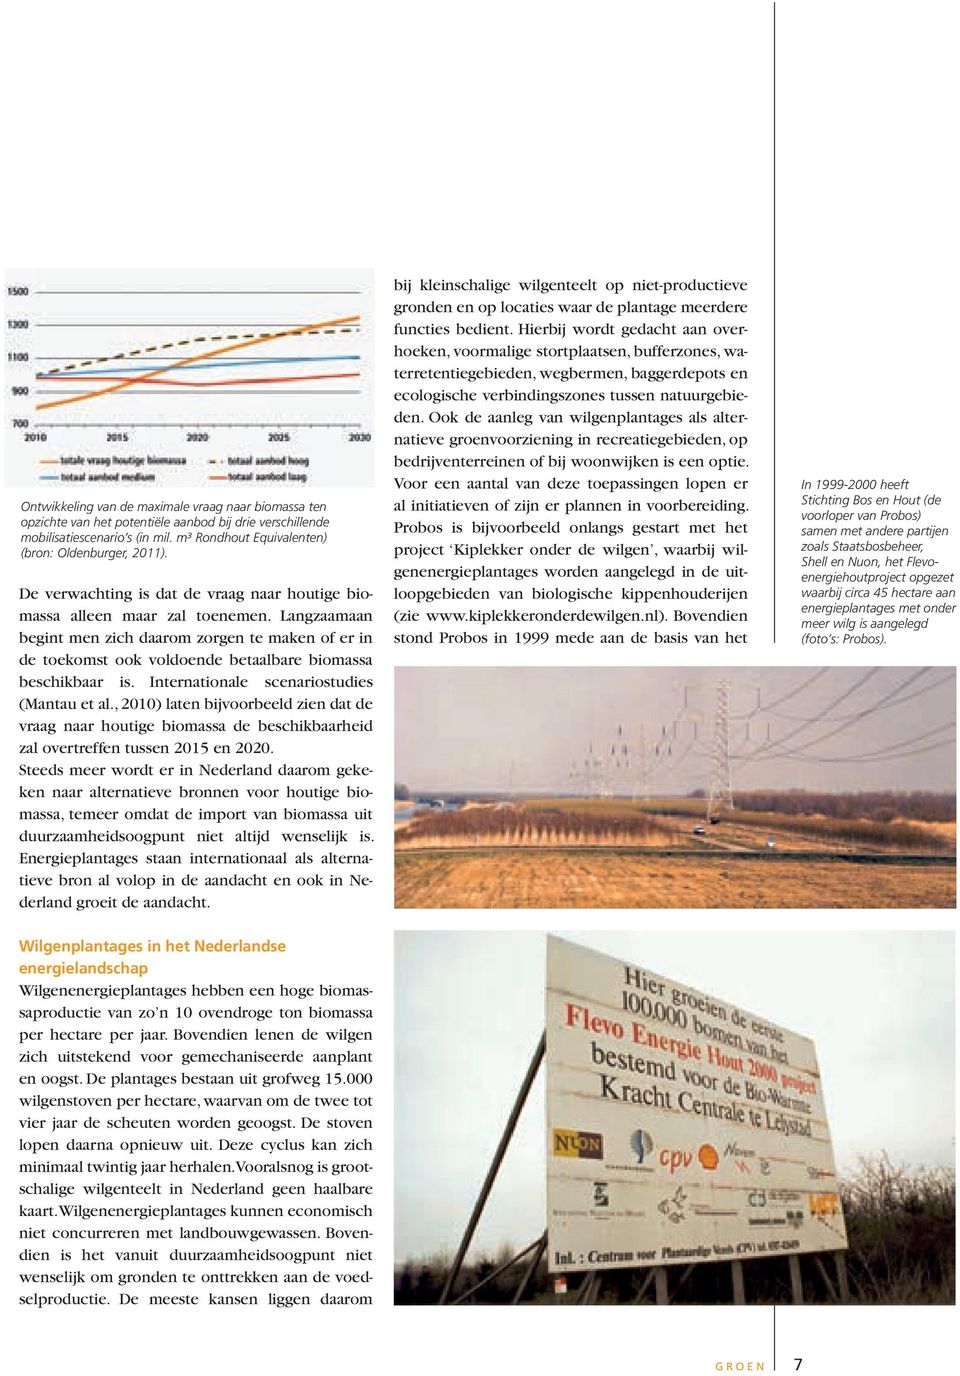 Internationale scenariostudies (Mantau et al., 2010) laten bijvoorbeeld zien dat de vraag naar houtige biomassa de beschikbaarheid zal overtreffen tussen 2015 en 2020.